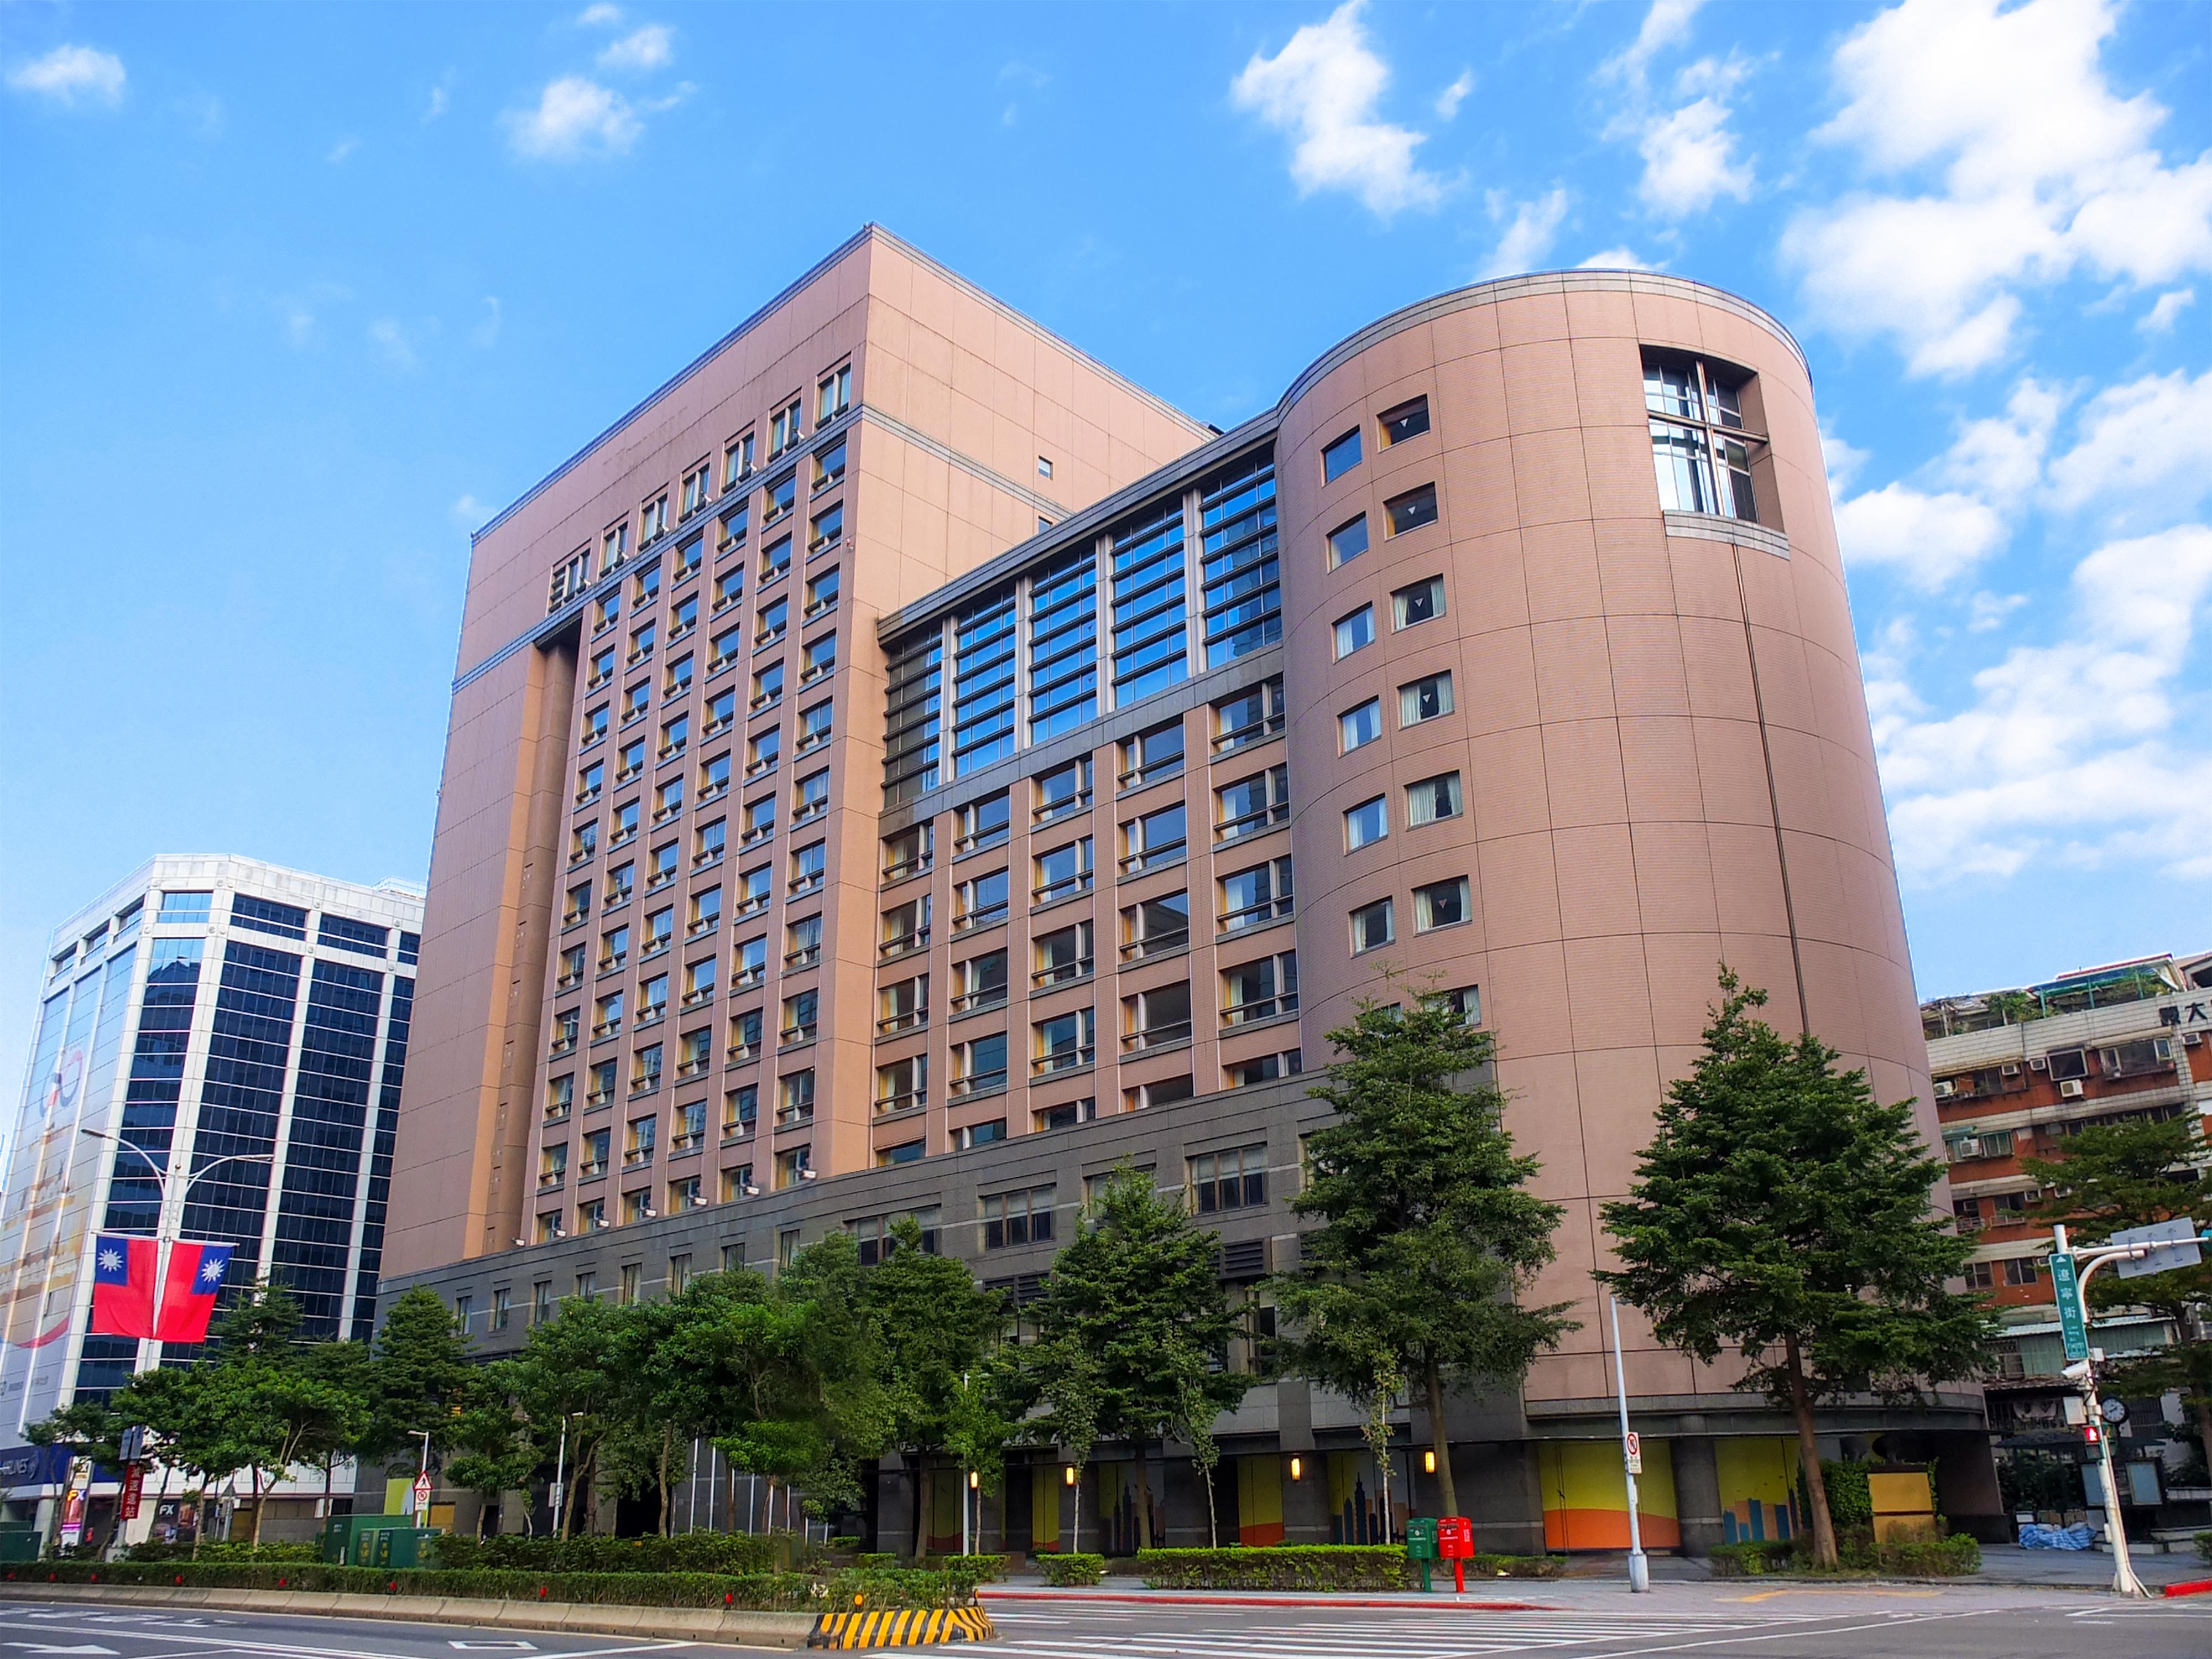 Jr東日本グループ 海外へホテル初出店 台湾に ホテルメトロポリタン プレミア 台北 を開業予定 Jr東日本ホテルズのプレスリリース